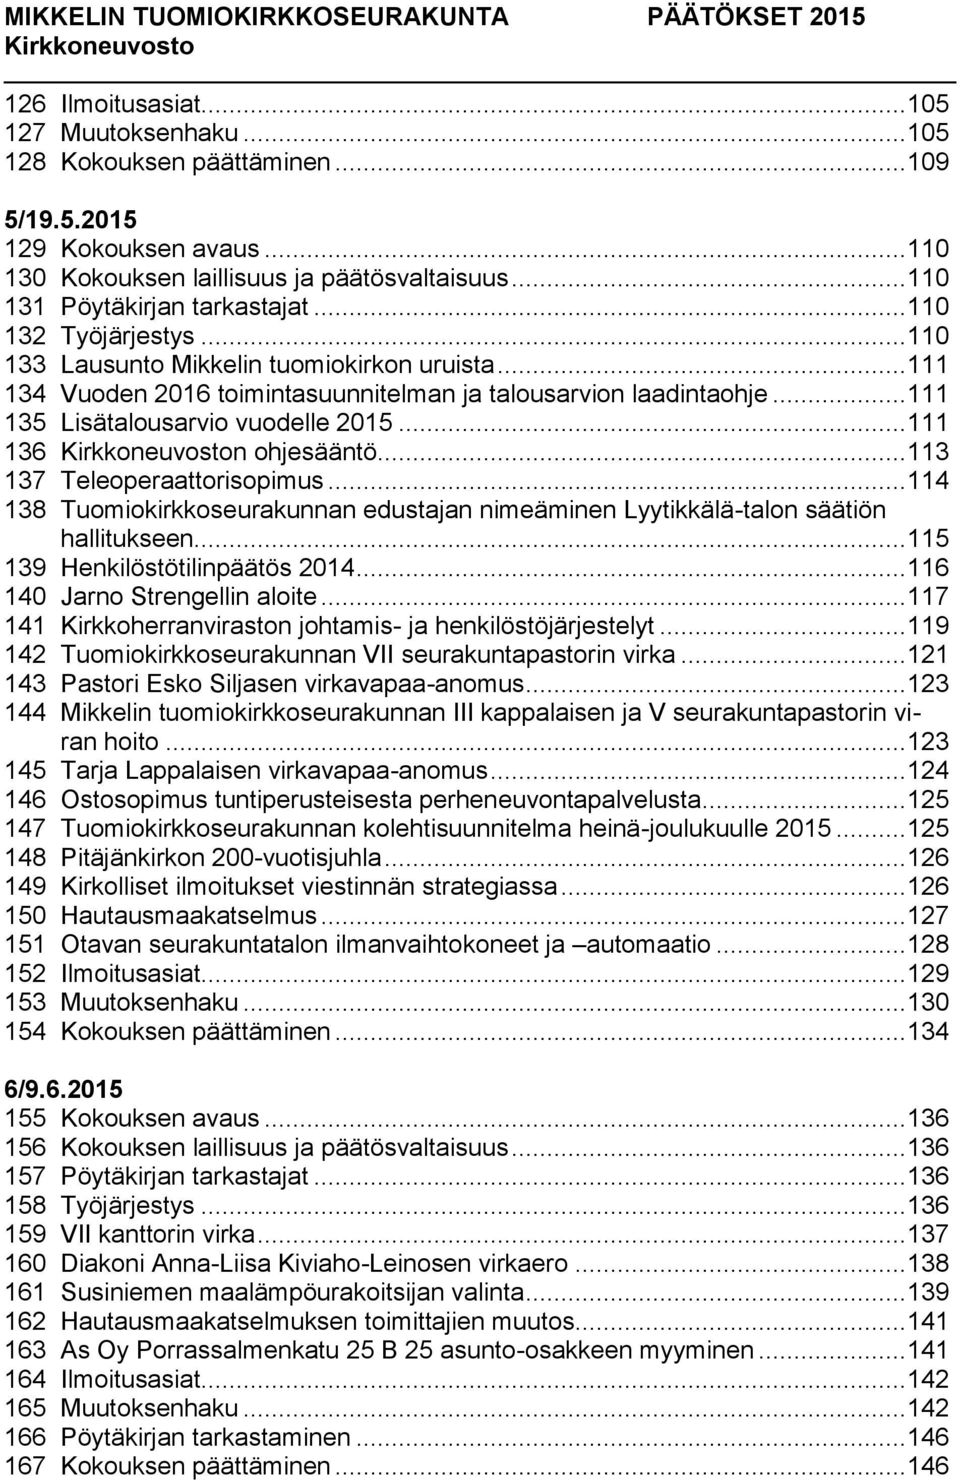 .. 111 136 n ohjesääntö... 113 137 Teleoperaattorisopimus... 114 138 Tuomiokirkkoseurakunnan edustajan nimeäminen Lyytikkälä-talon säätiön hallitukseen... 115 139 Henkilöstötilinpäätös 2014.